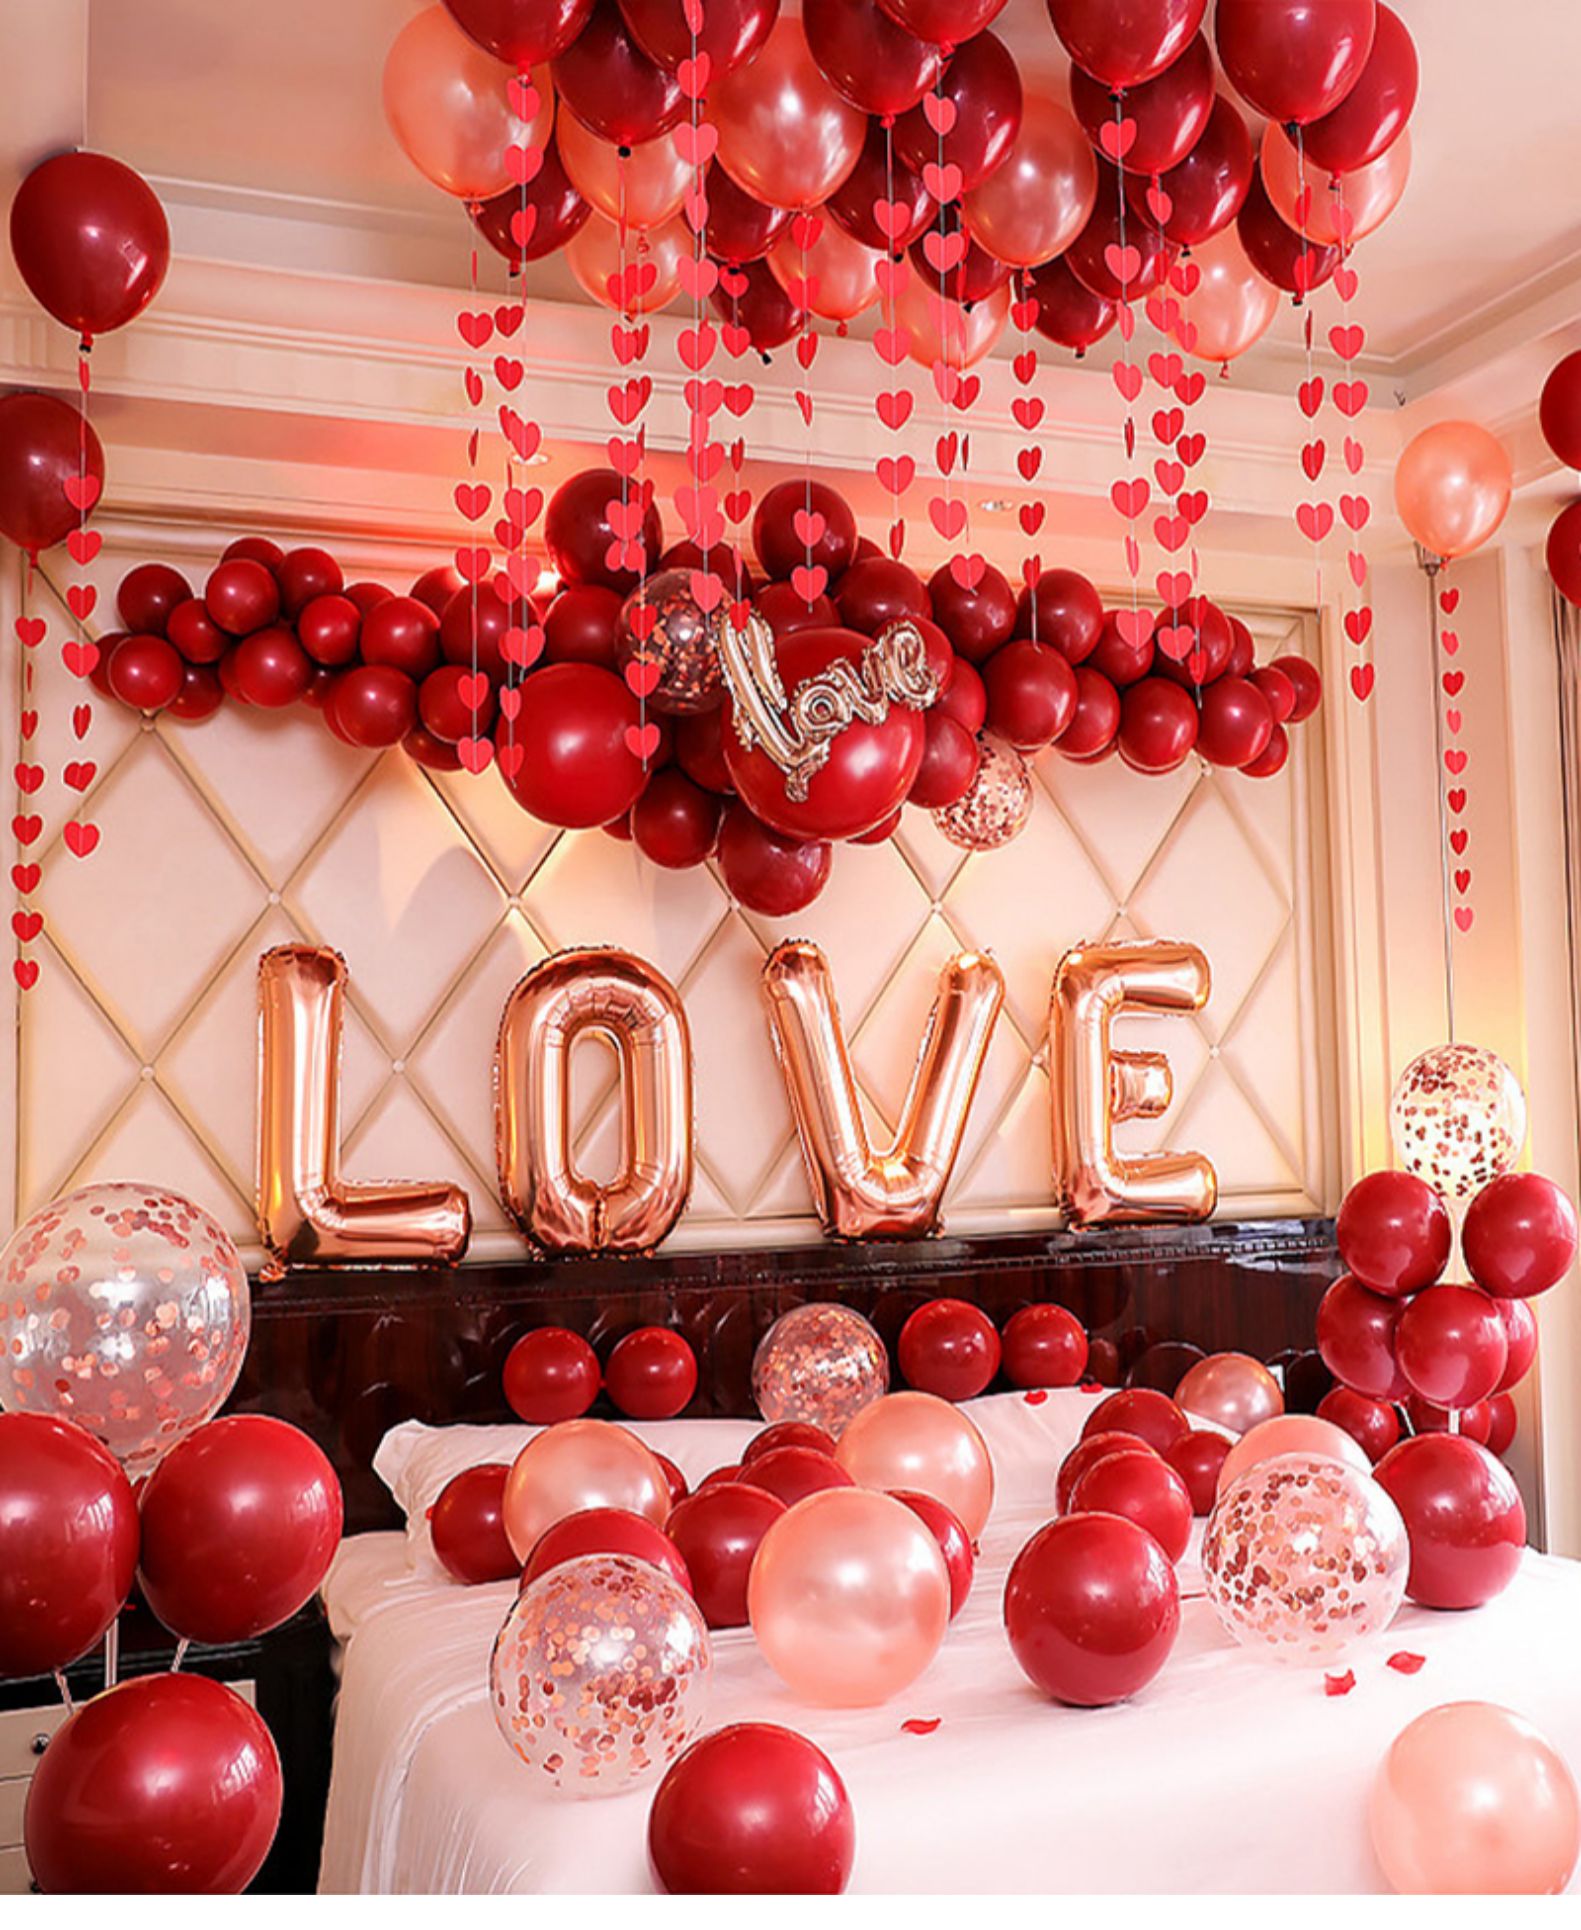 婚房布置套装网红婚礼创意浪漫场景用品大全婚庆结婚气球装饰套餐love